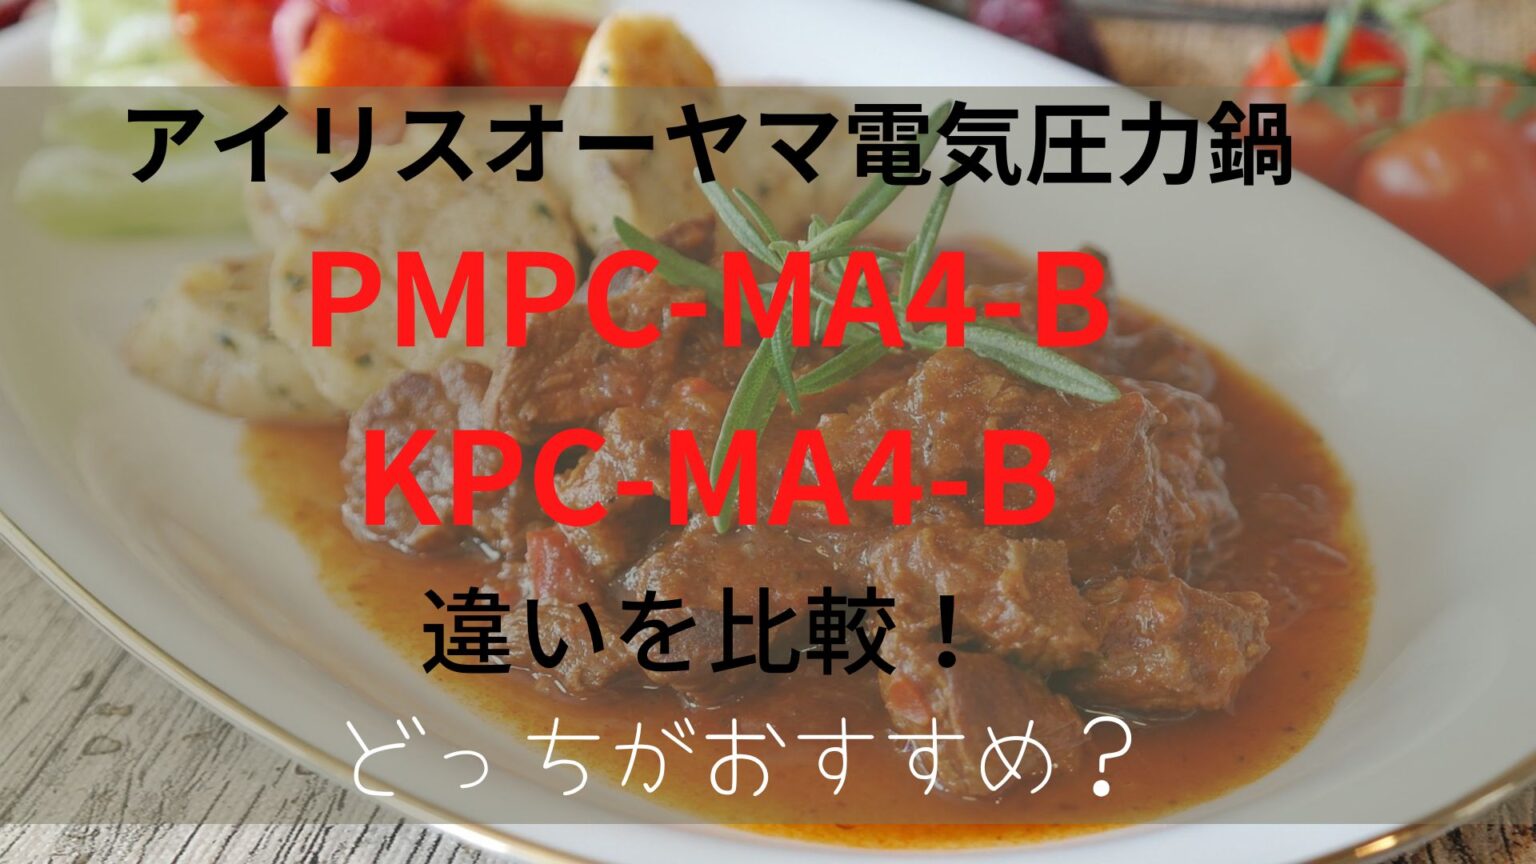 PMPC-MA4-BとKPC-MA4-Bの違いを比較！どっちがおすすめ？のアイキャッチ画像